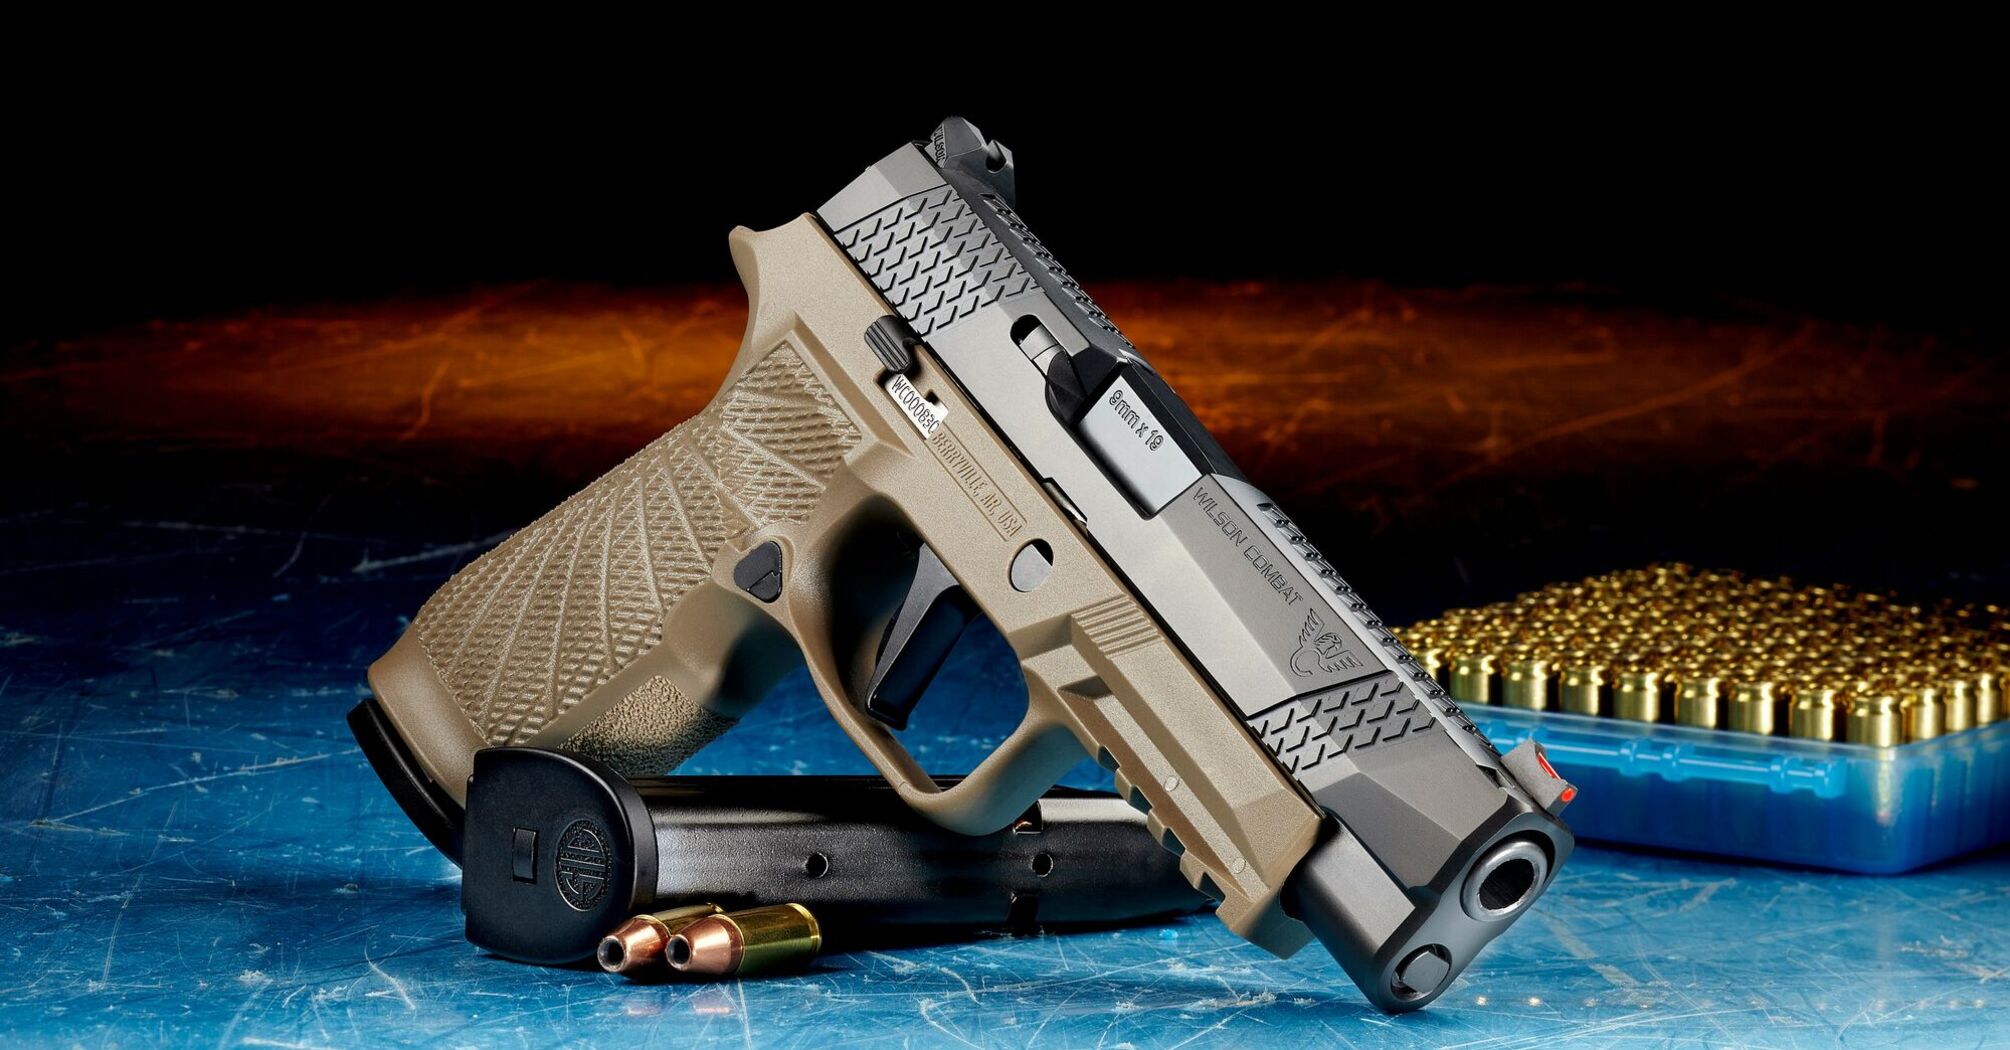 A handgun with ammunition on a surface